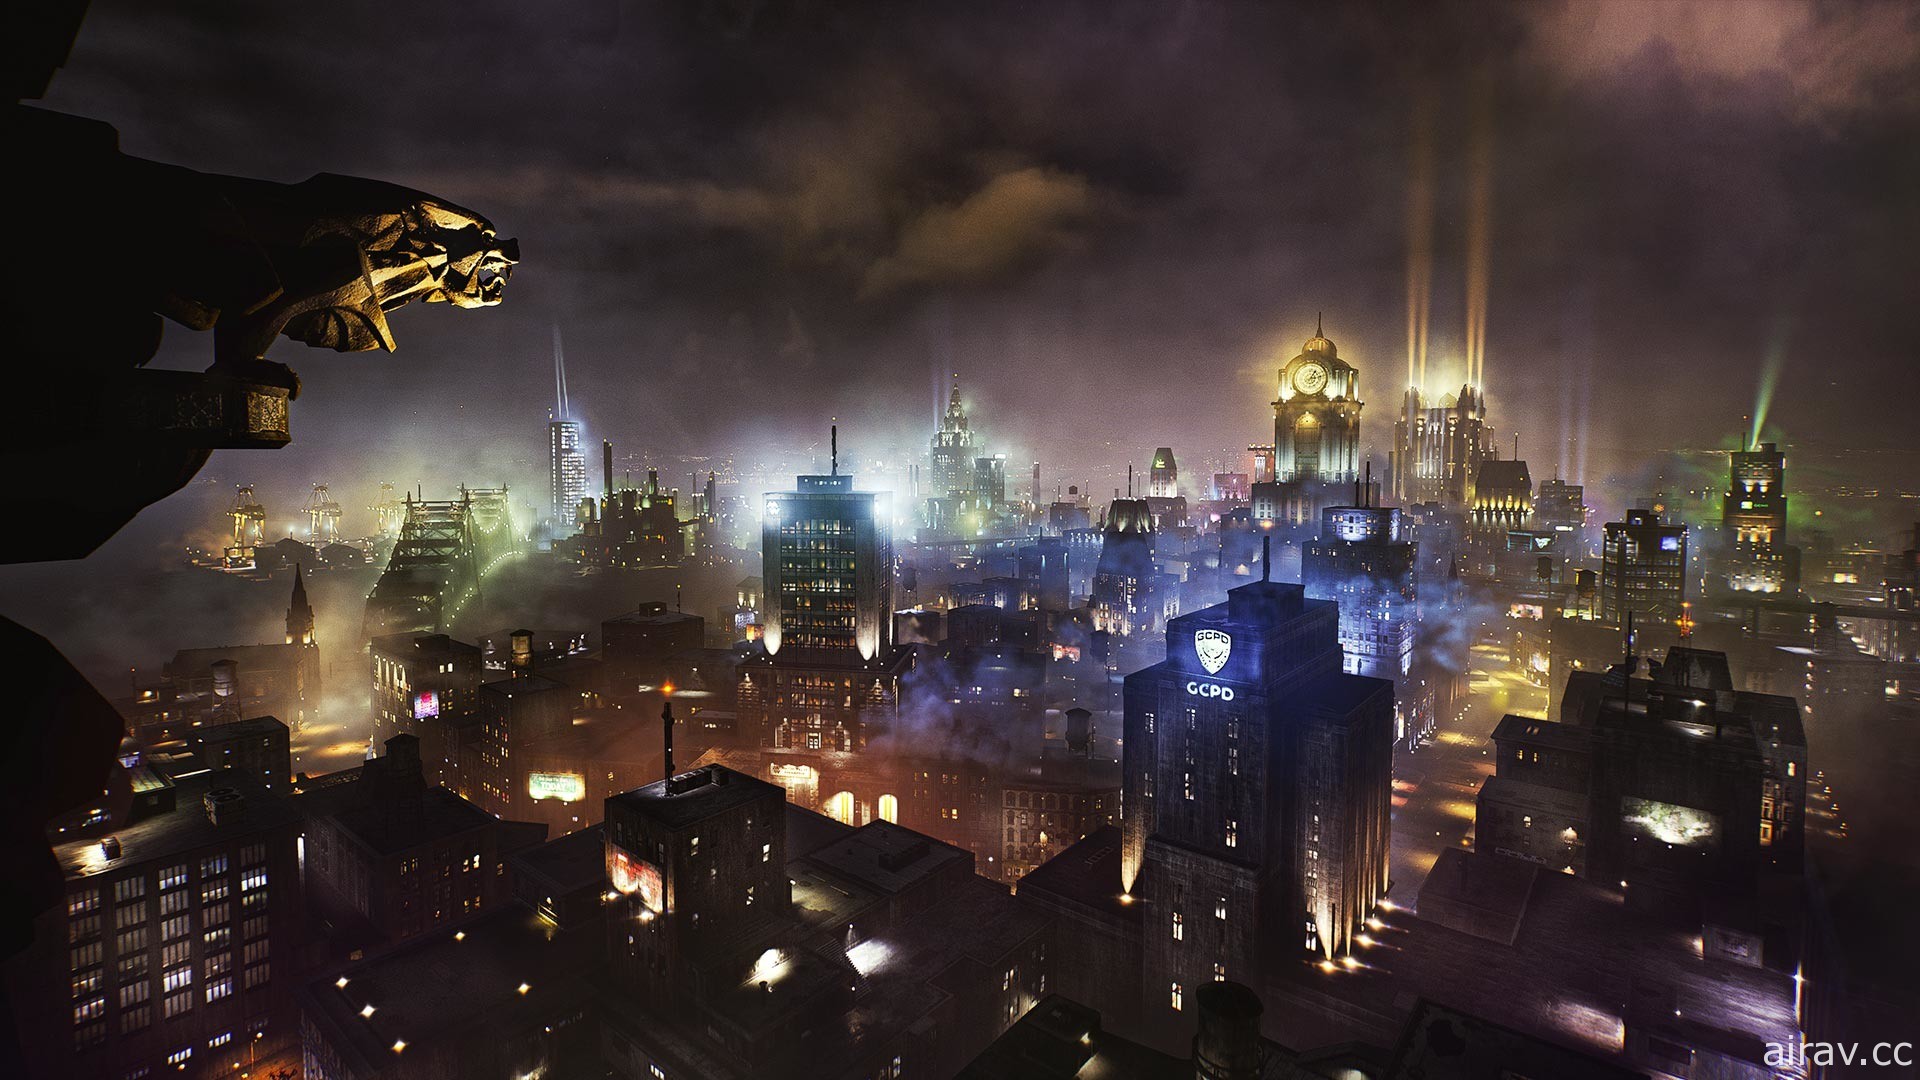 《高谭骑士》释出“夜翼”“红头罩”实机游玩展示影片 确定将由次世代主机独占发行